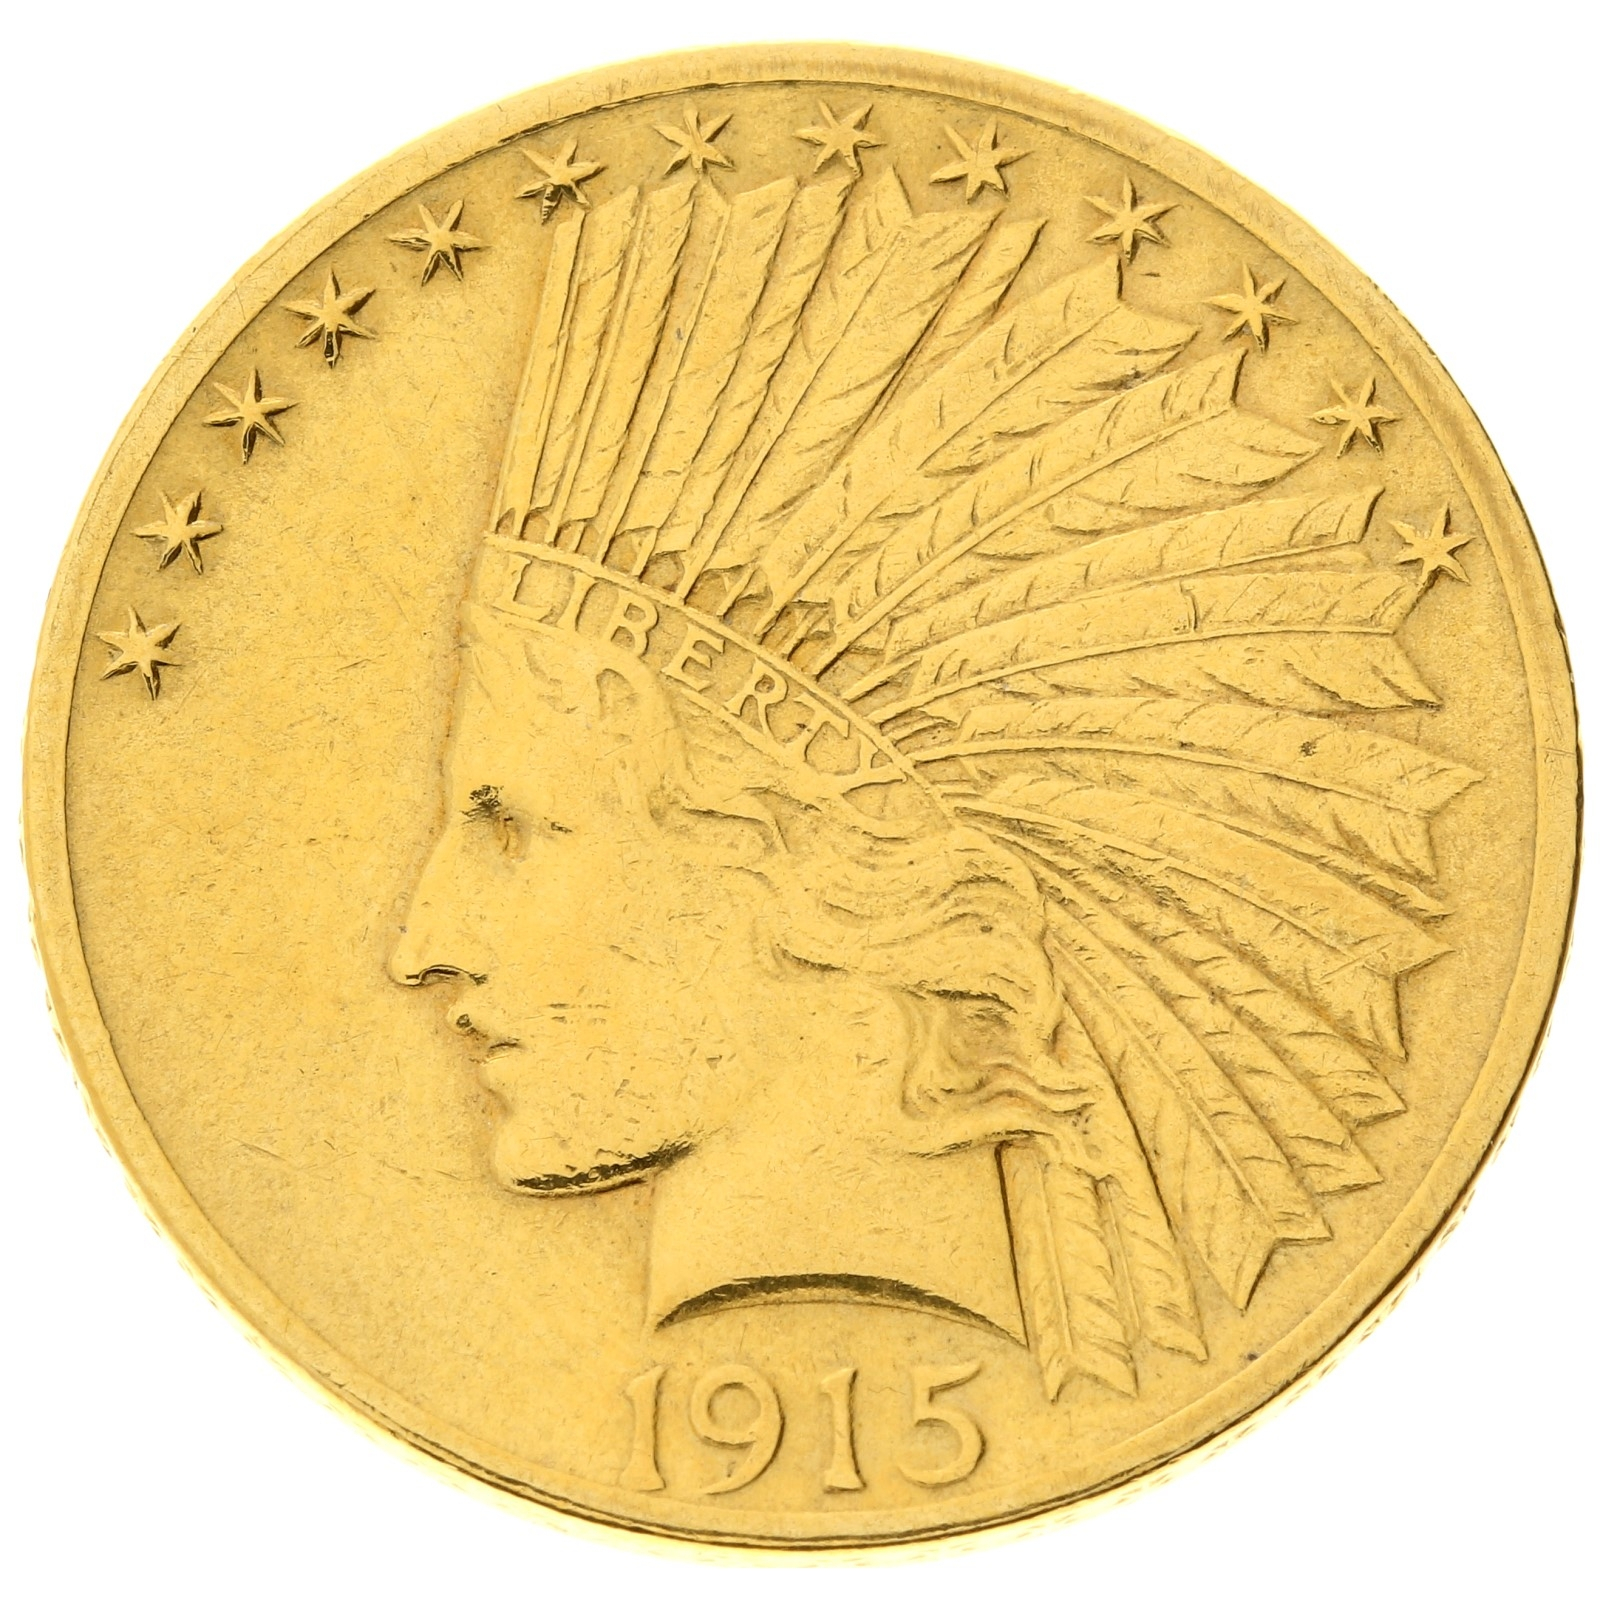 USA - 10 dollars - 1915 - Indian Head